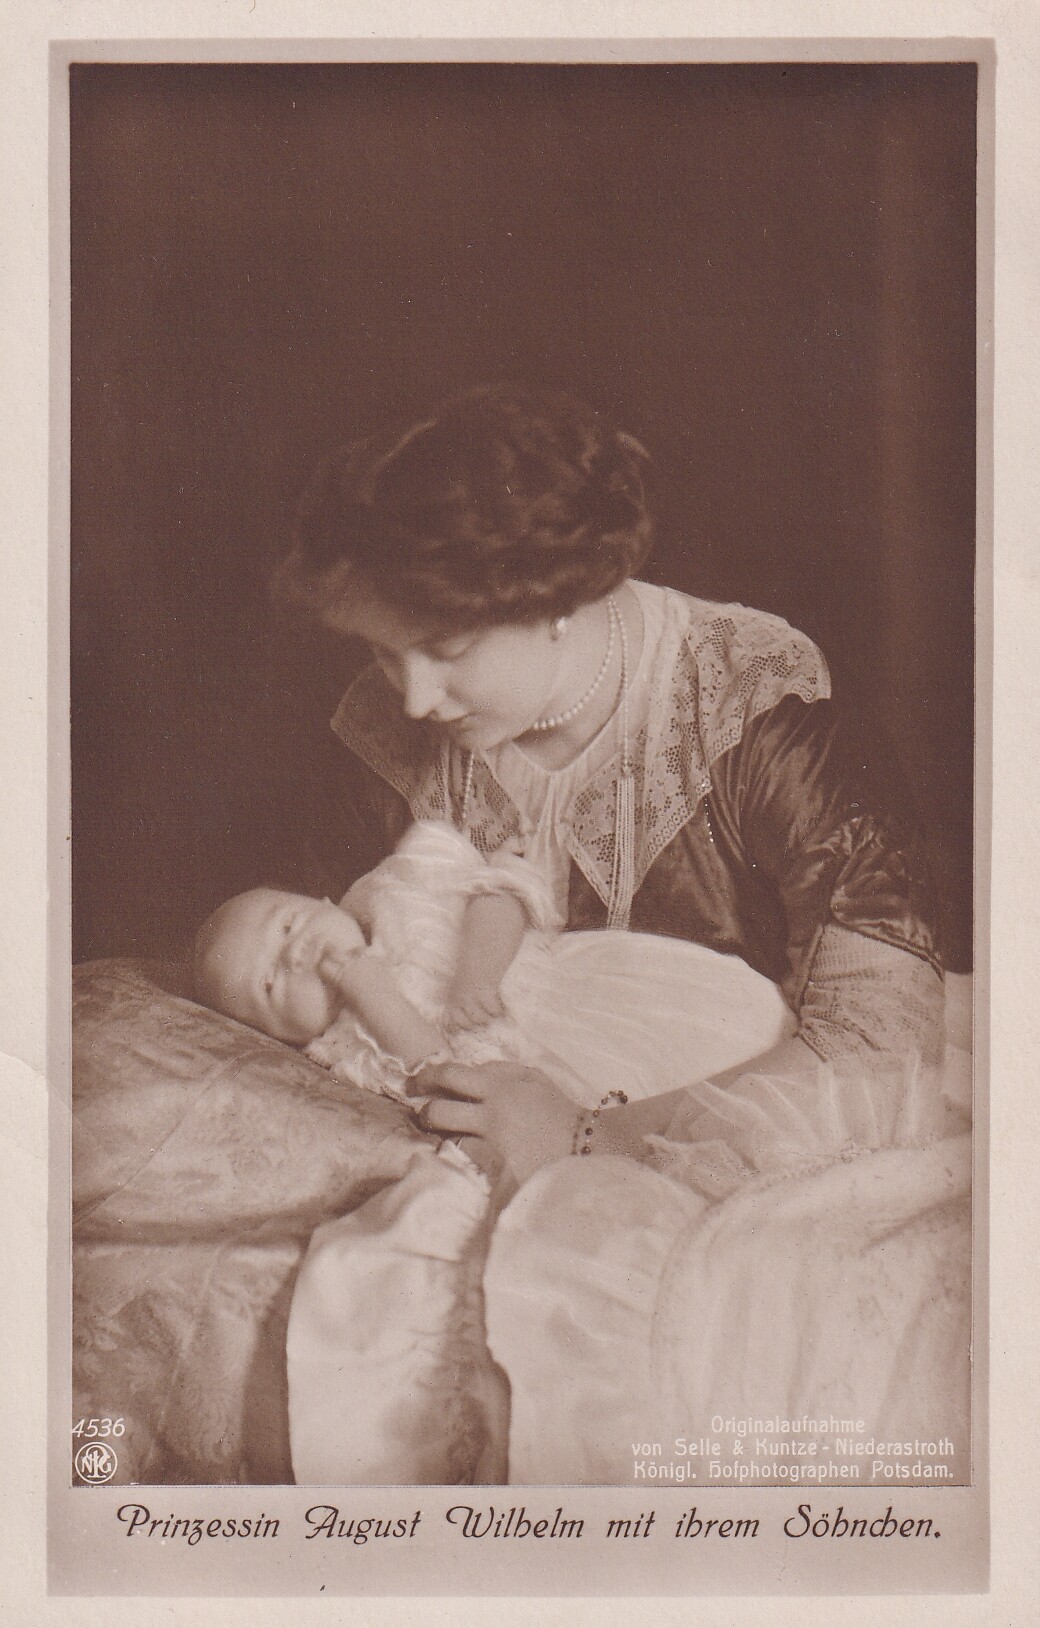 Bildpostkarte mit Foto der Prinzessin Alexandra Viktoria von Preußen mit ihrem Sohn, 1913 (Schloß Wernigerode GmbH RR-F)